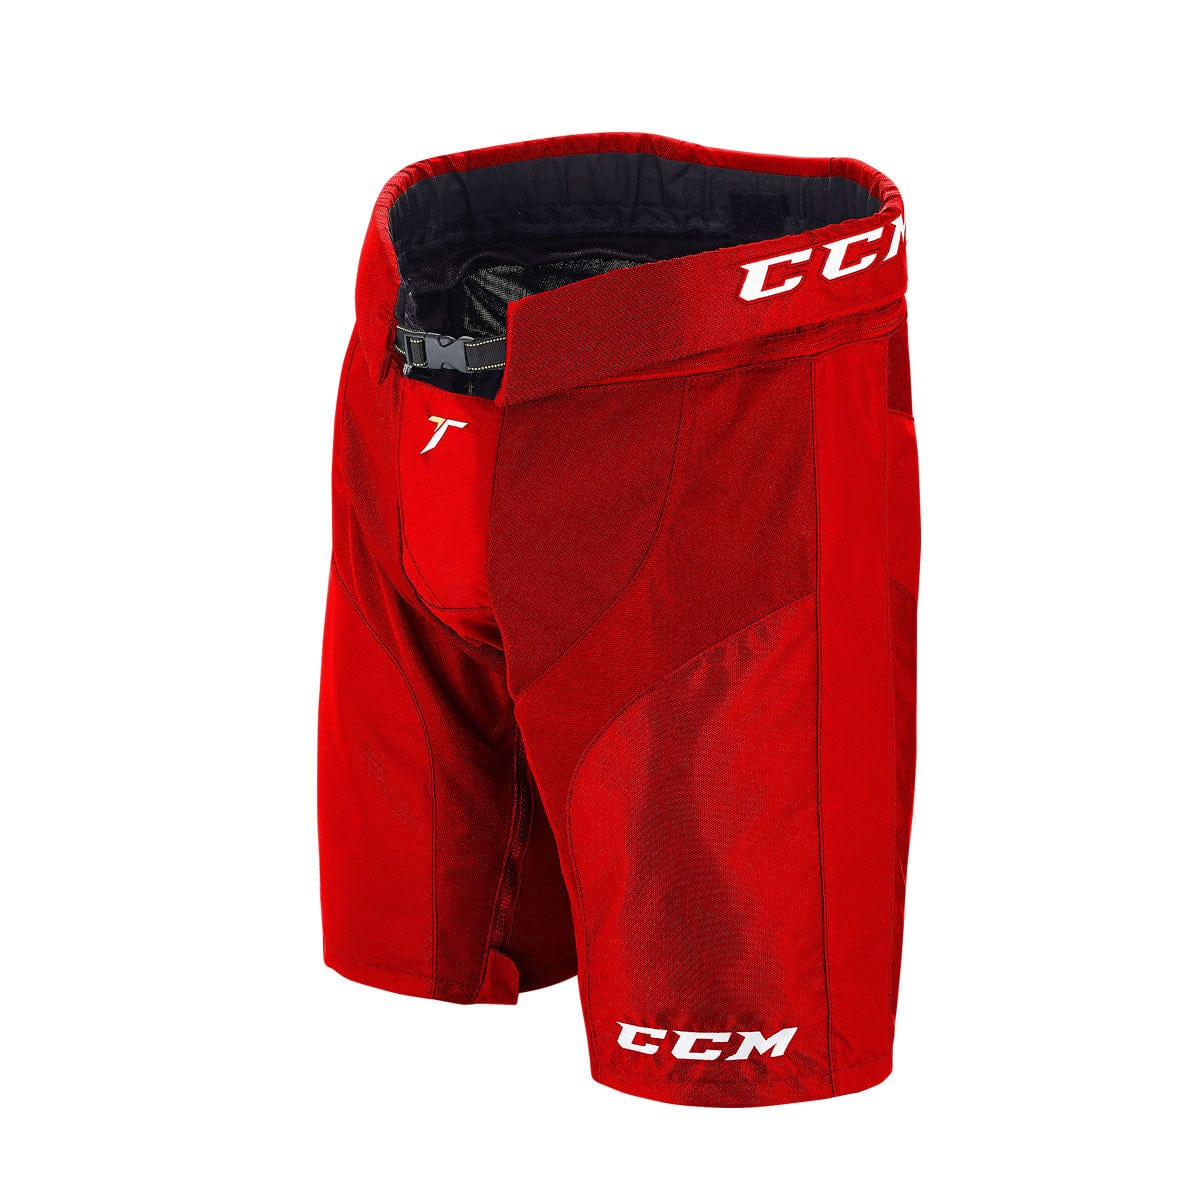 CCM Tacks Senior Hockey Pant Shell